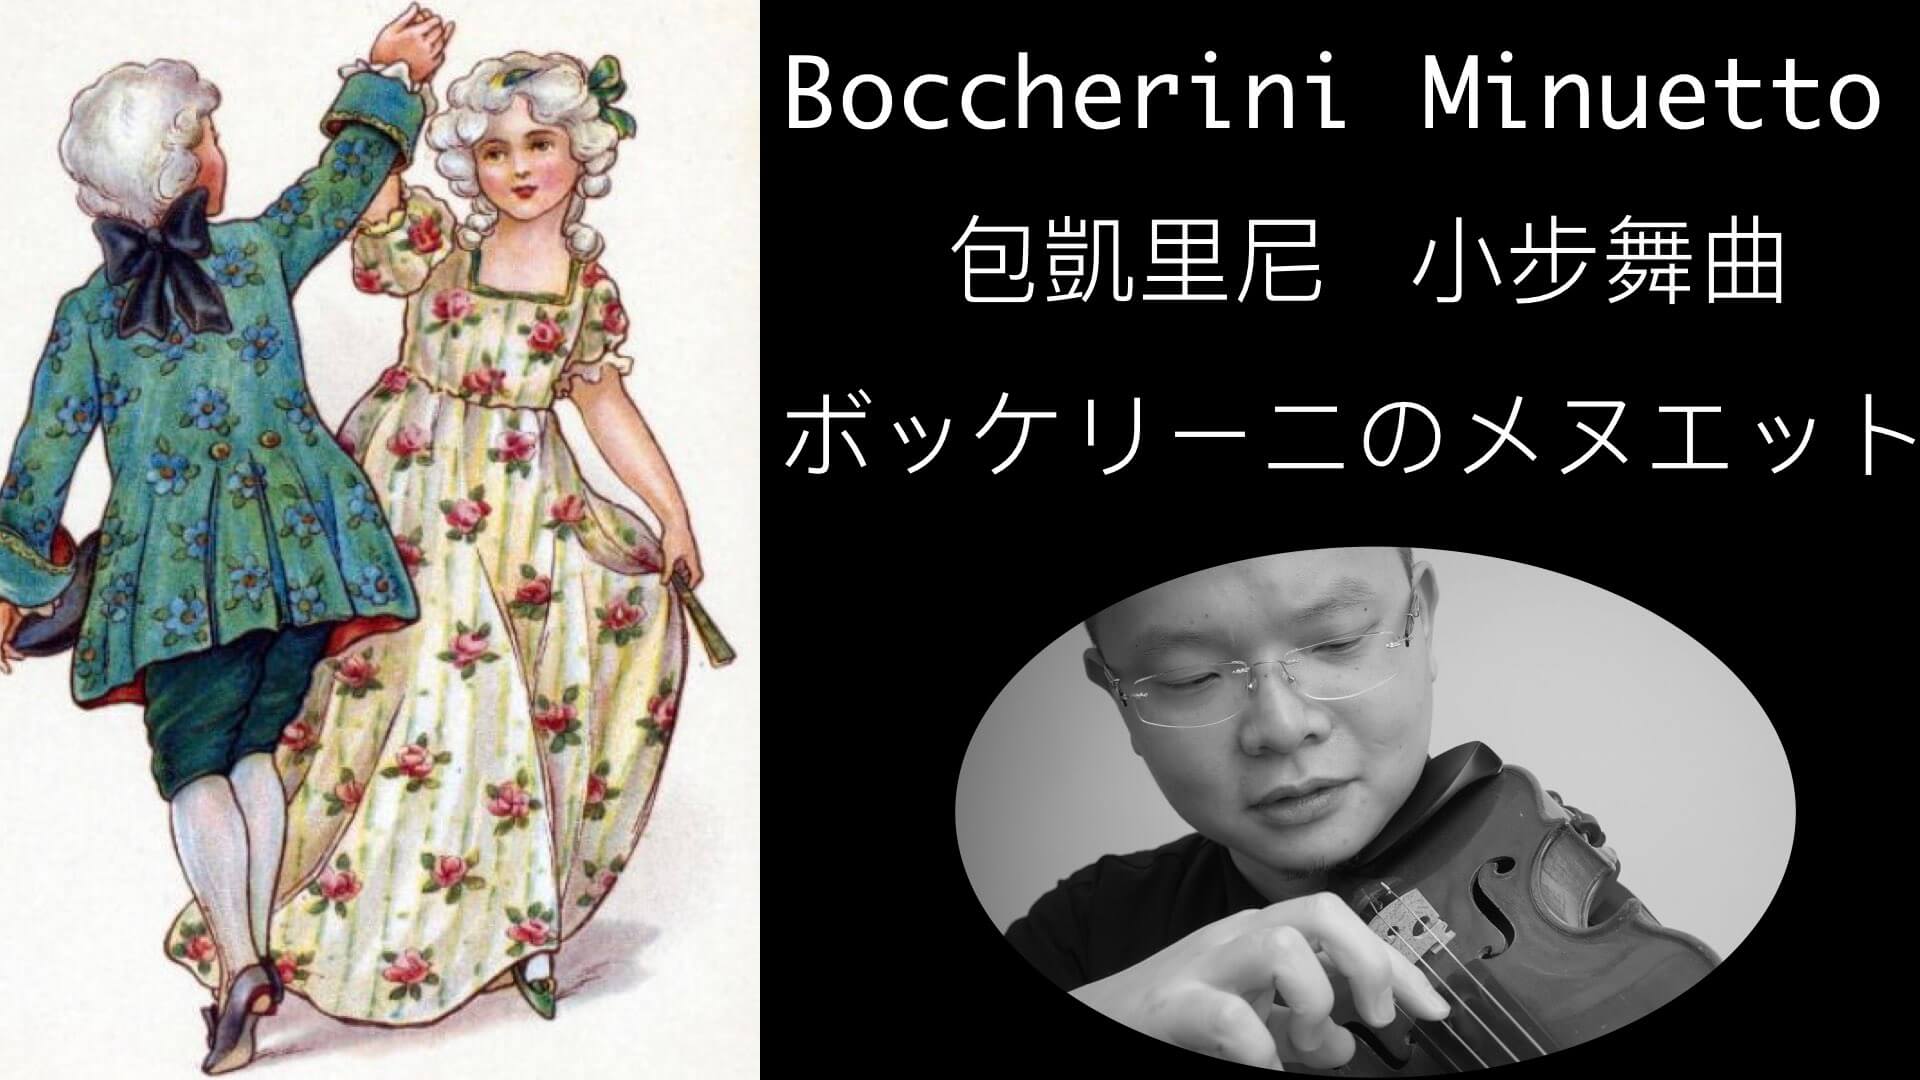 用心看世界的日本鋼琴家 Nobuyuki Tsujii @
			
				張偉軒小提琴
			
		